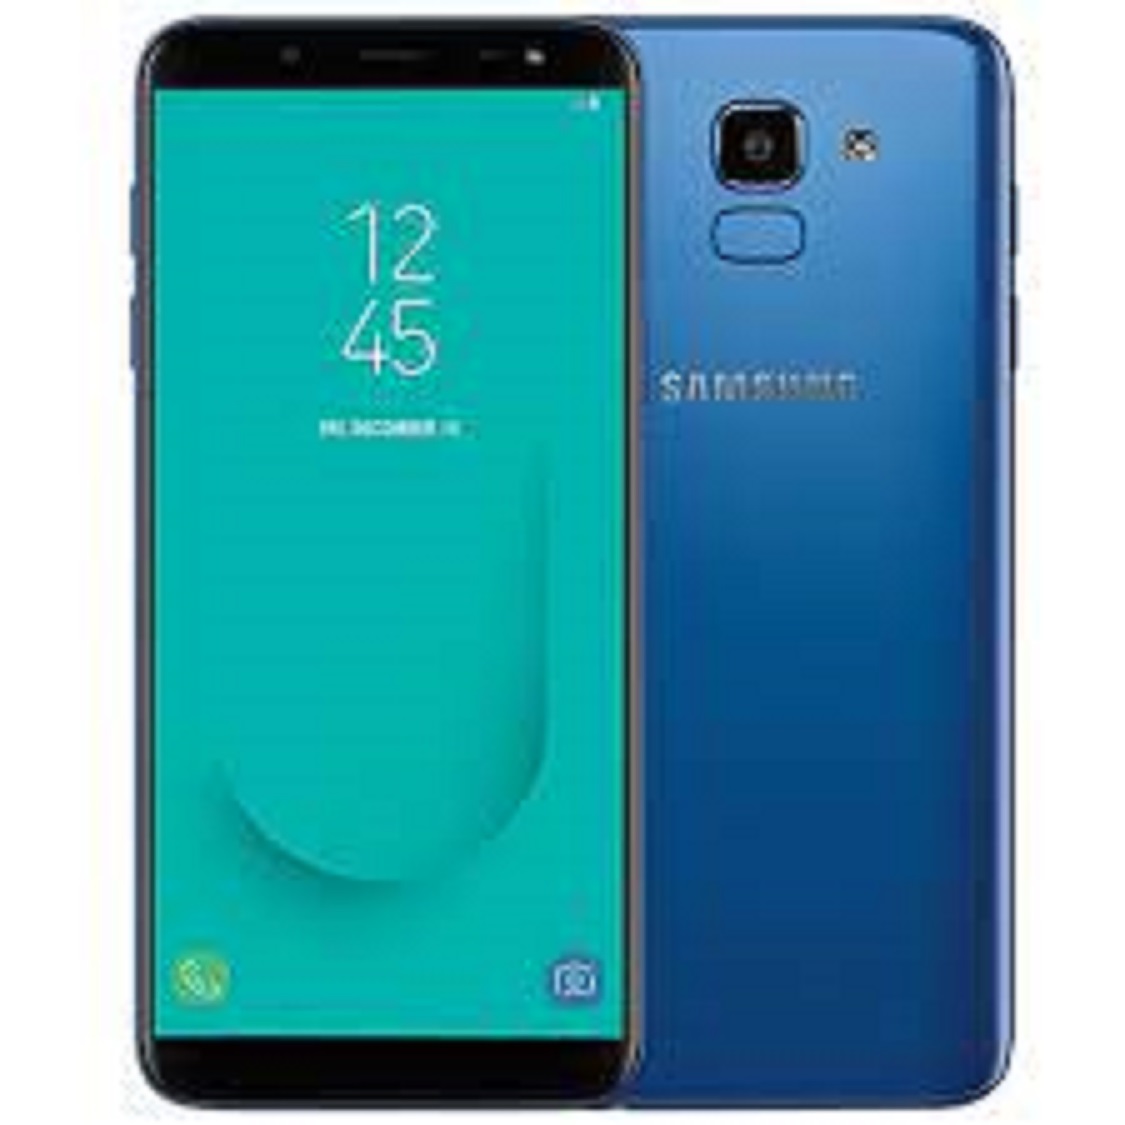 điện thoại Samsung Galaxy J6 2018 2sim, bảo hành 12 tháng, Camera sắc nét